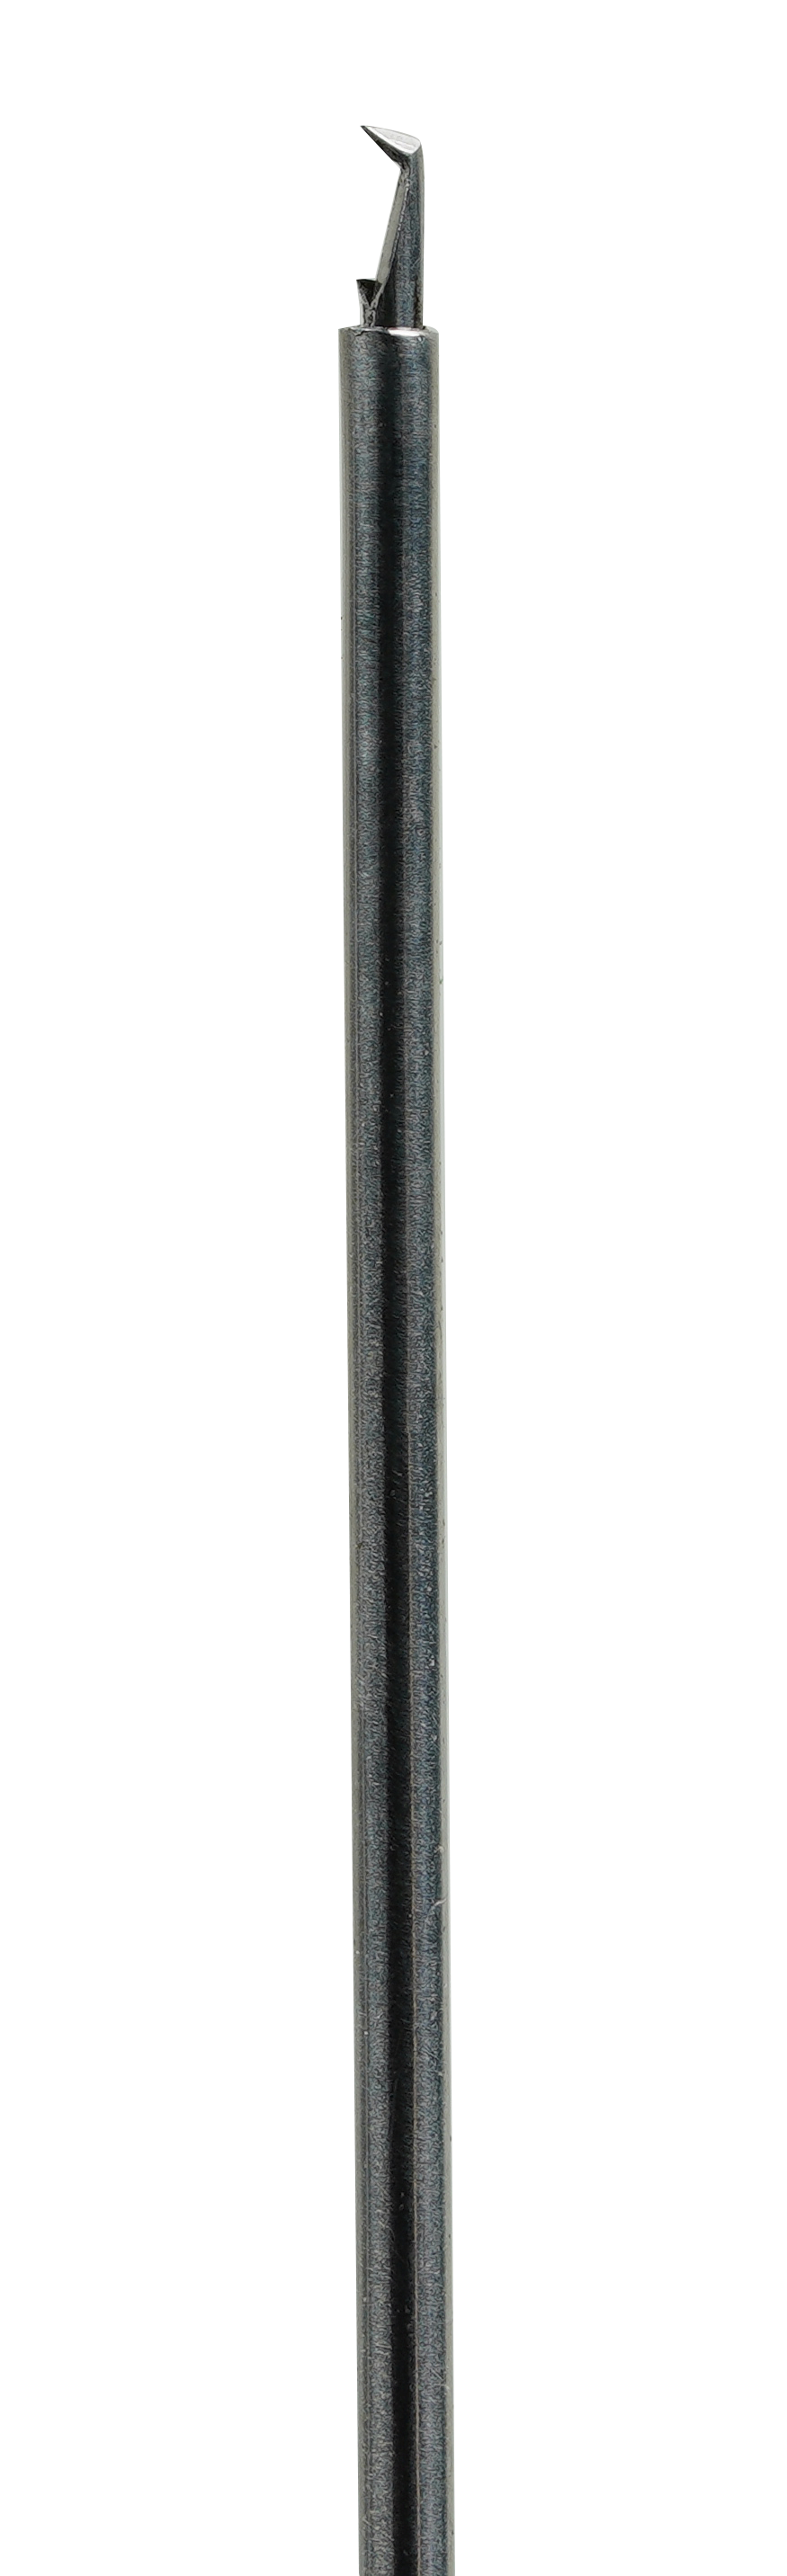 UN-3123 (25G) Пинцет для гладких губок из нержавеющей стали